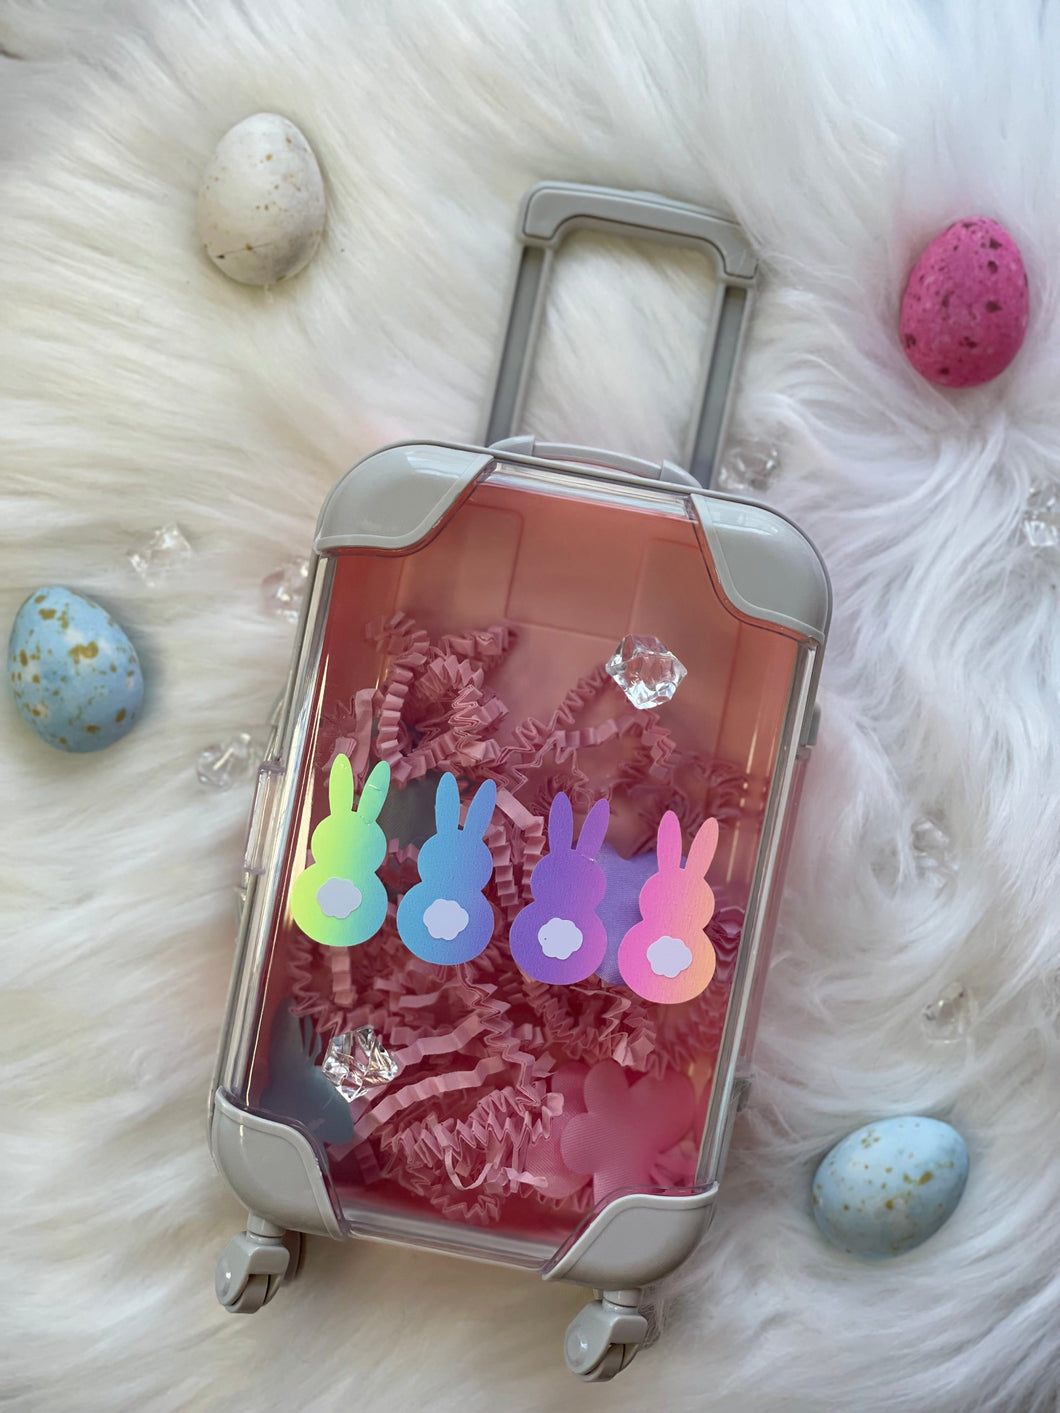 Cute Easter gift idea!